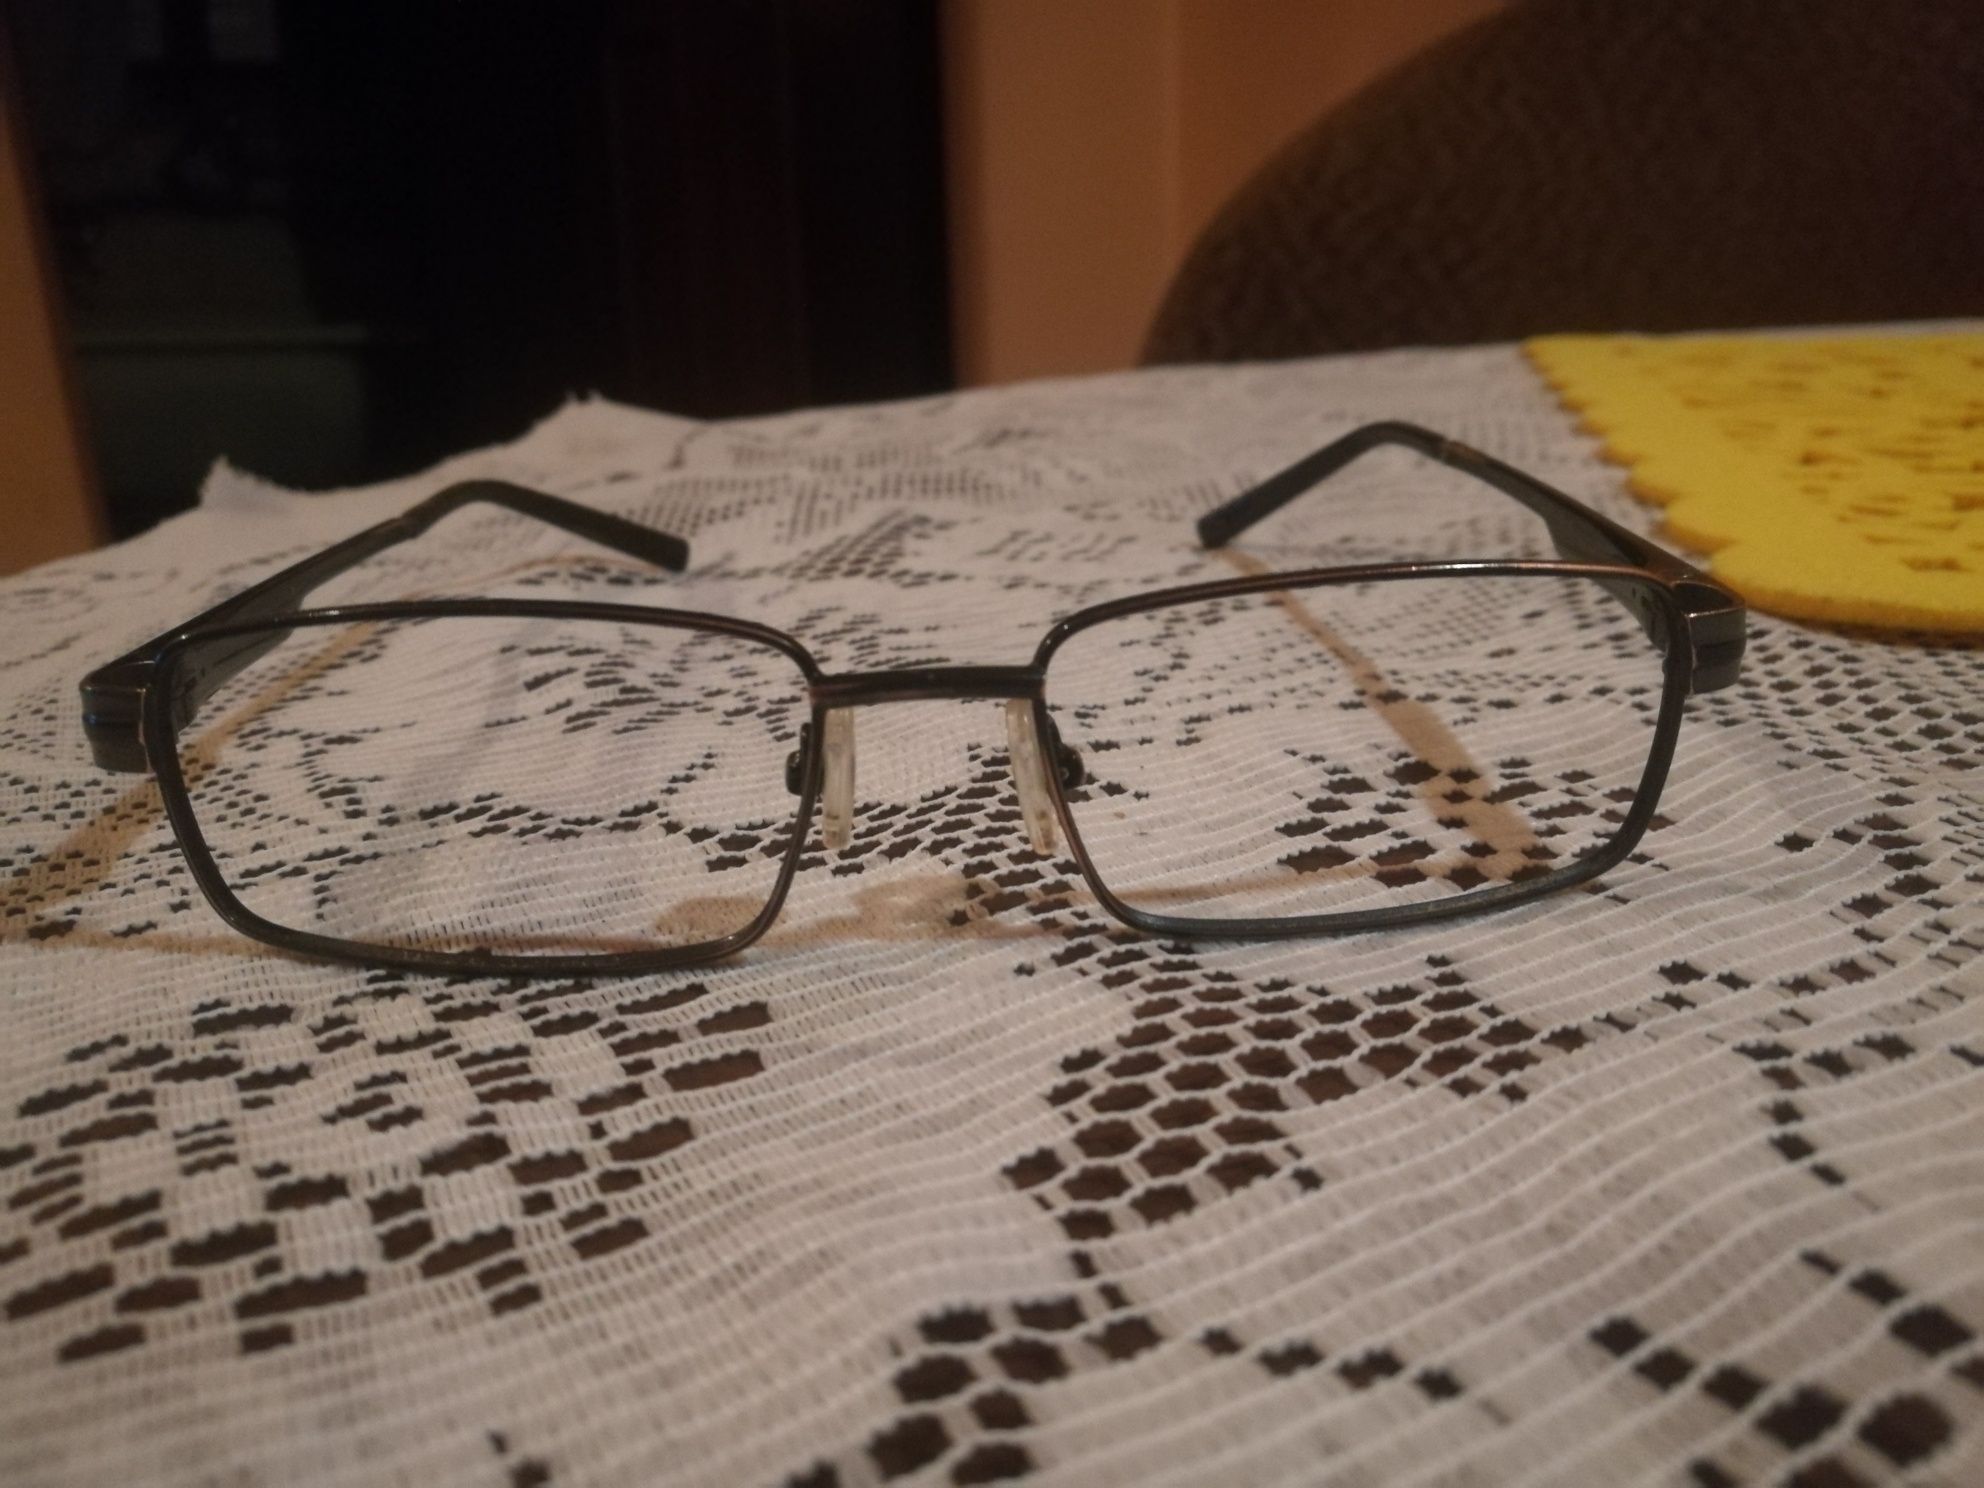 Oprawki okularów korekcyjnych